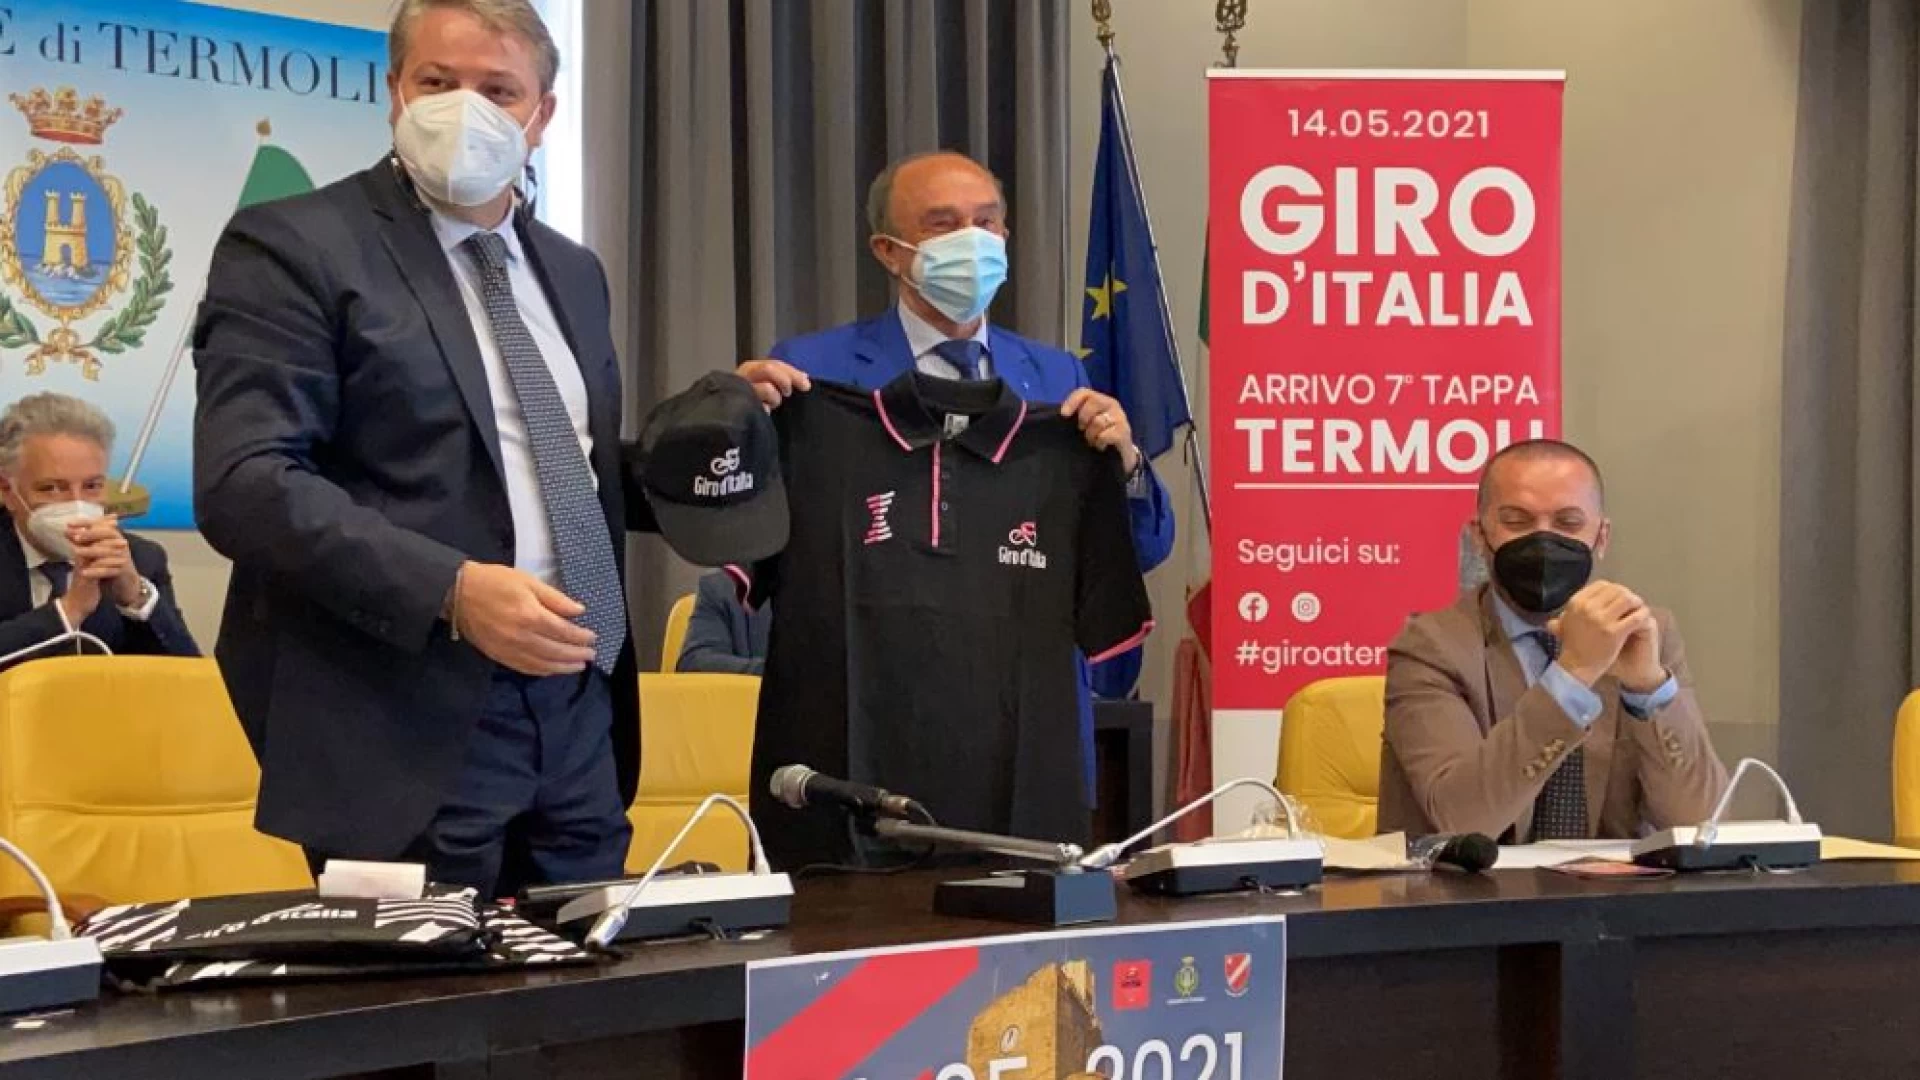 Termoli: presentata la tappa del Giro d’Italia con arrivo in città.